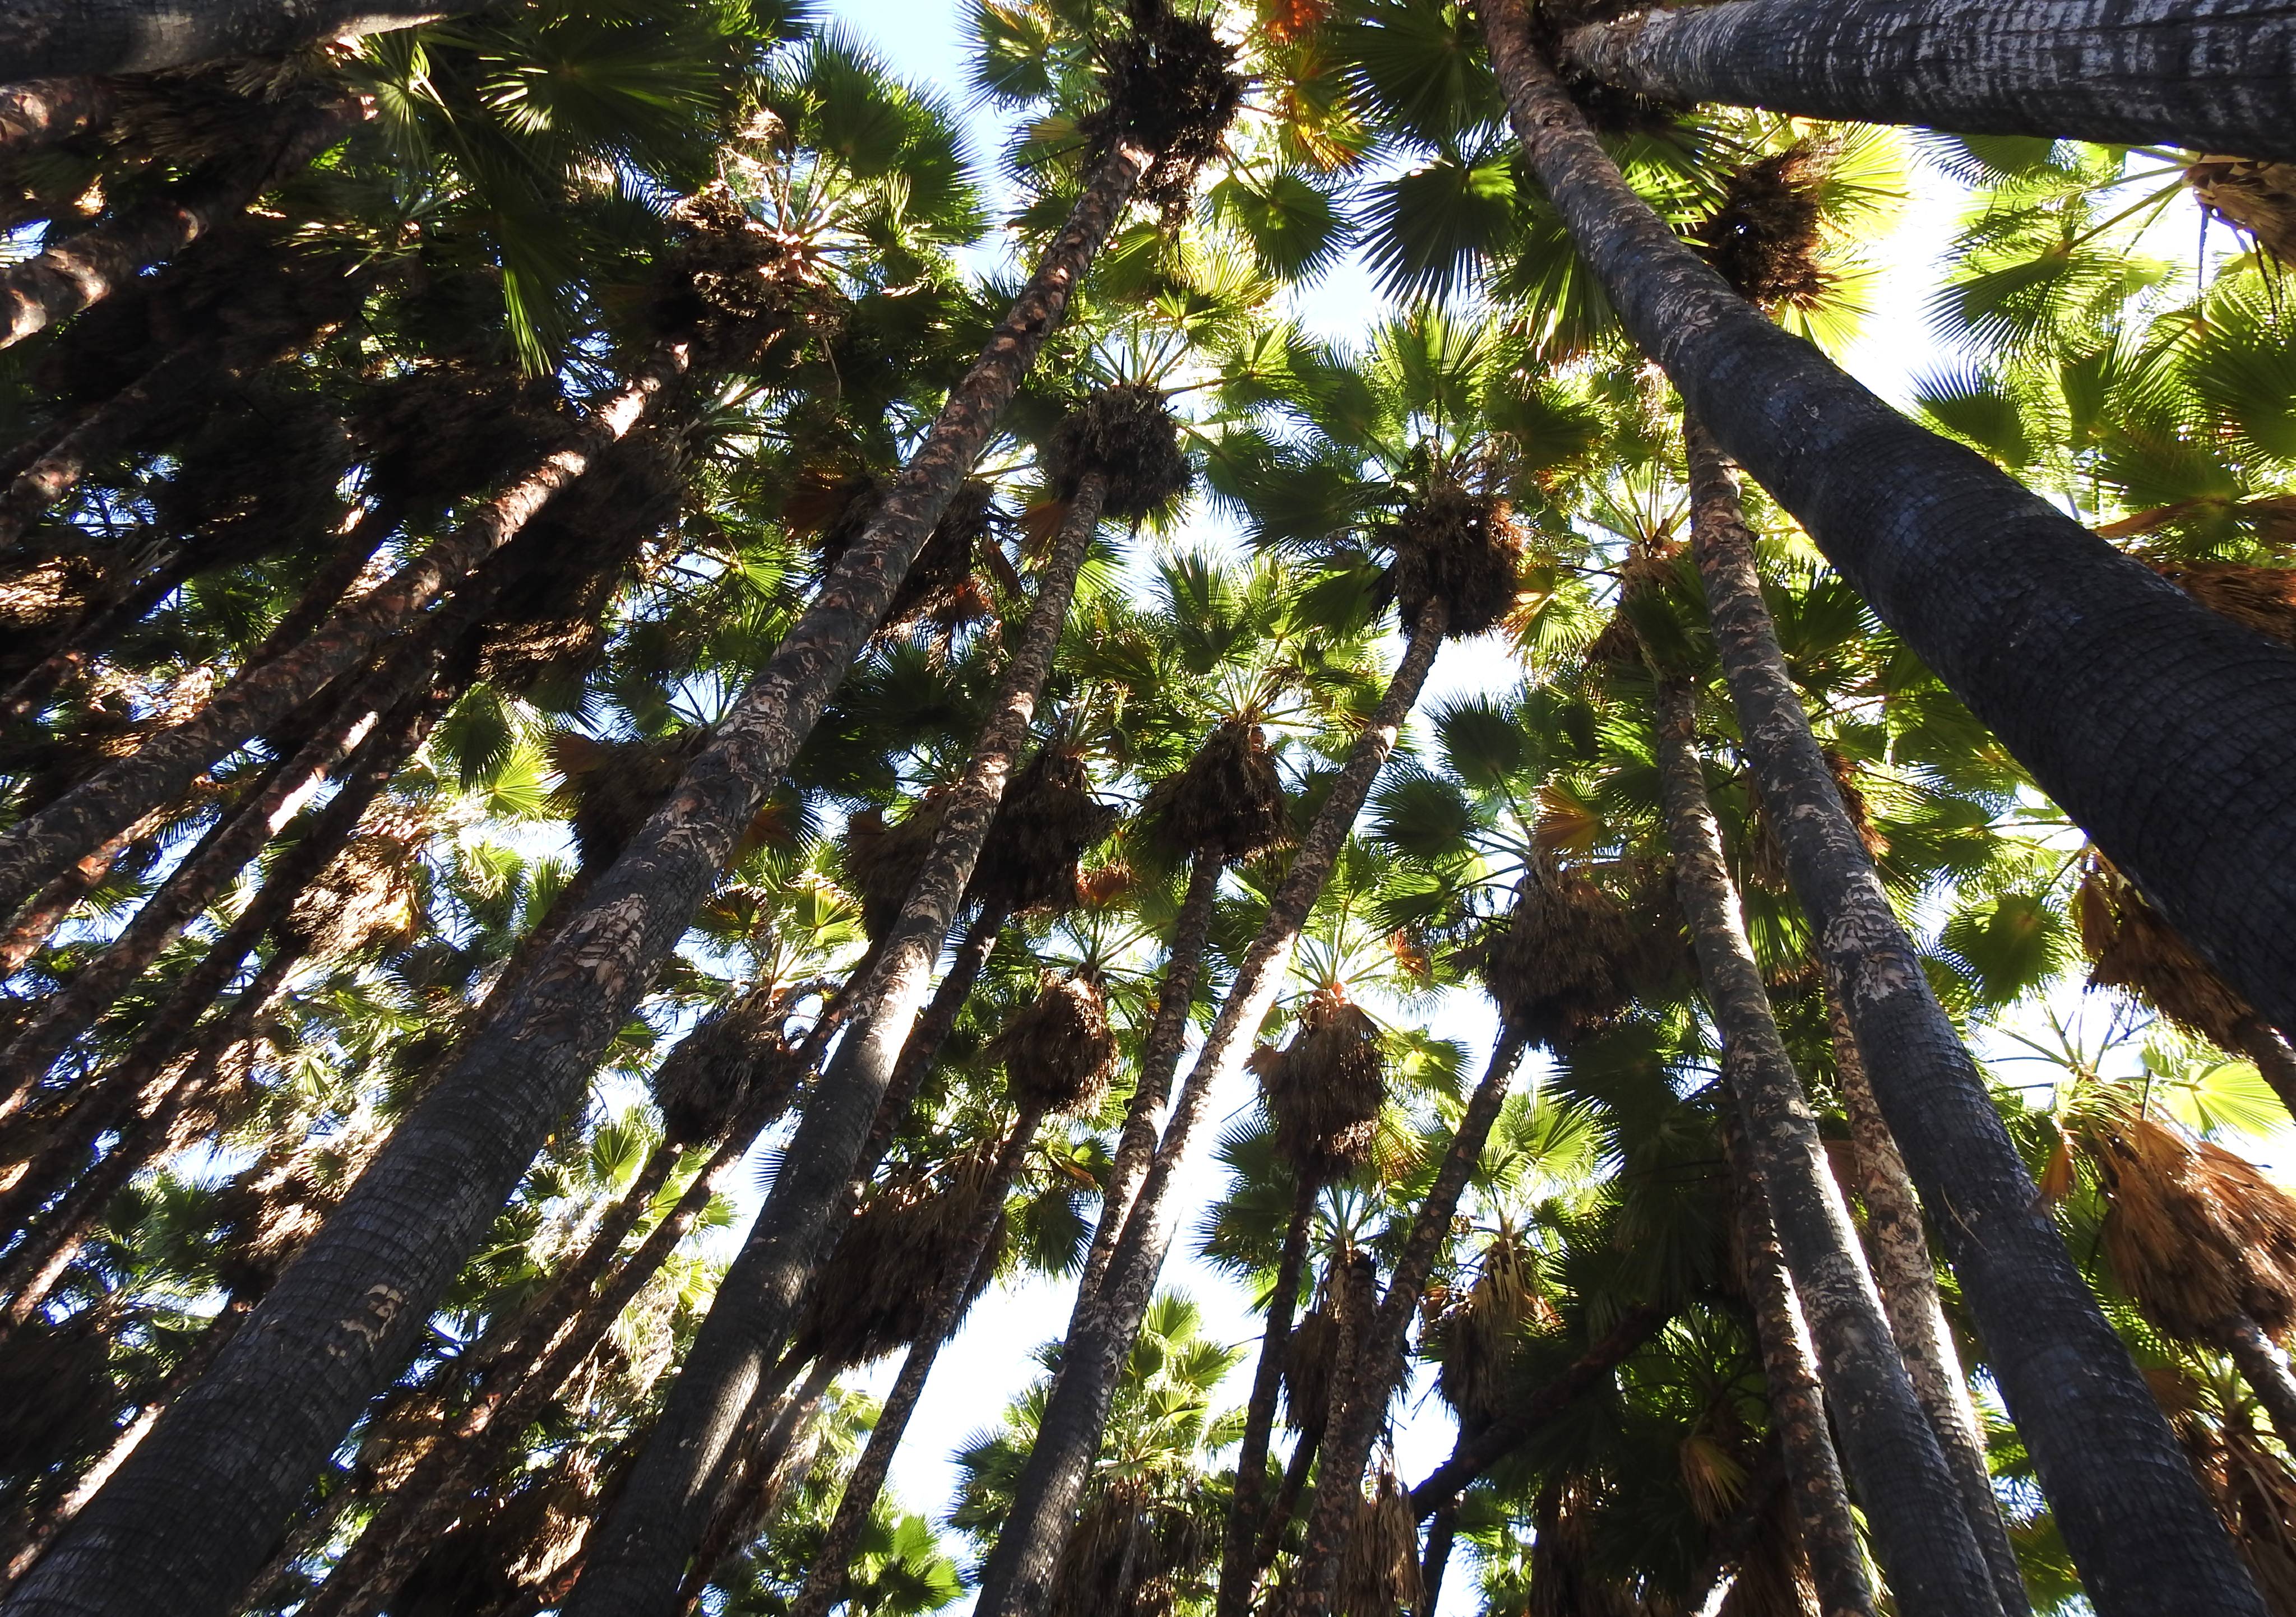 The towering washingtonia palms